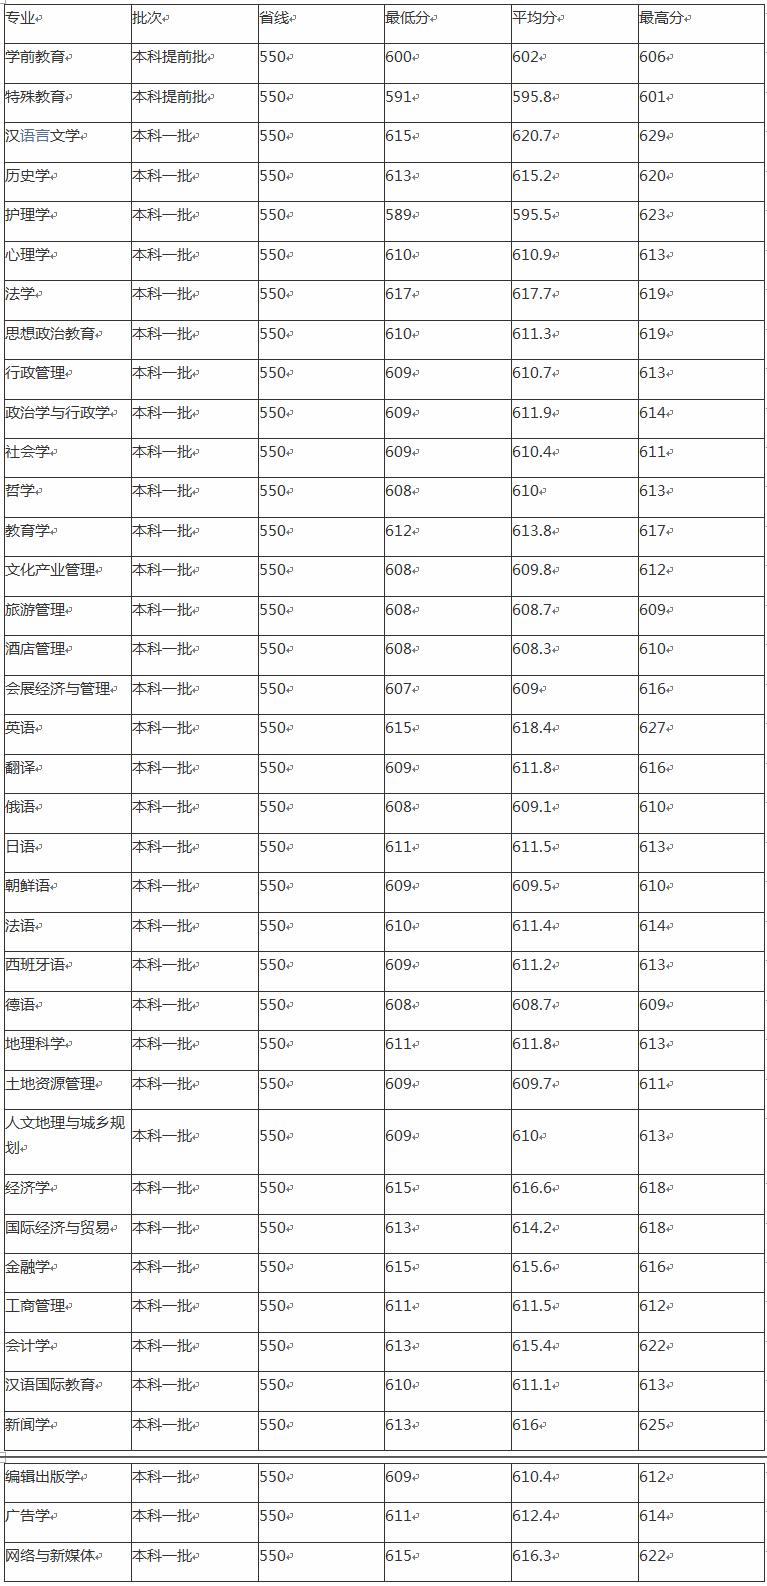 湖南师范大学在211中的排名,在师范类的排名(图3)